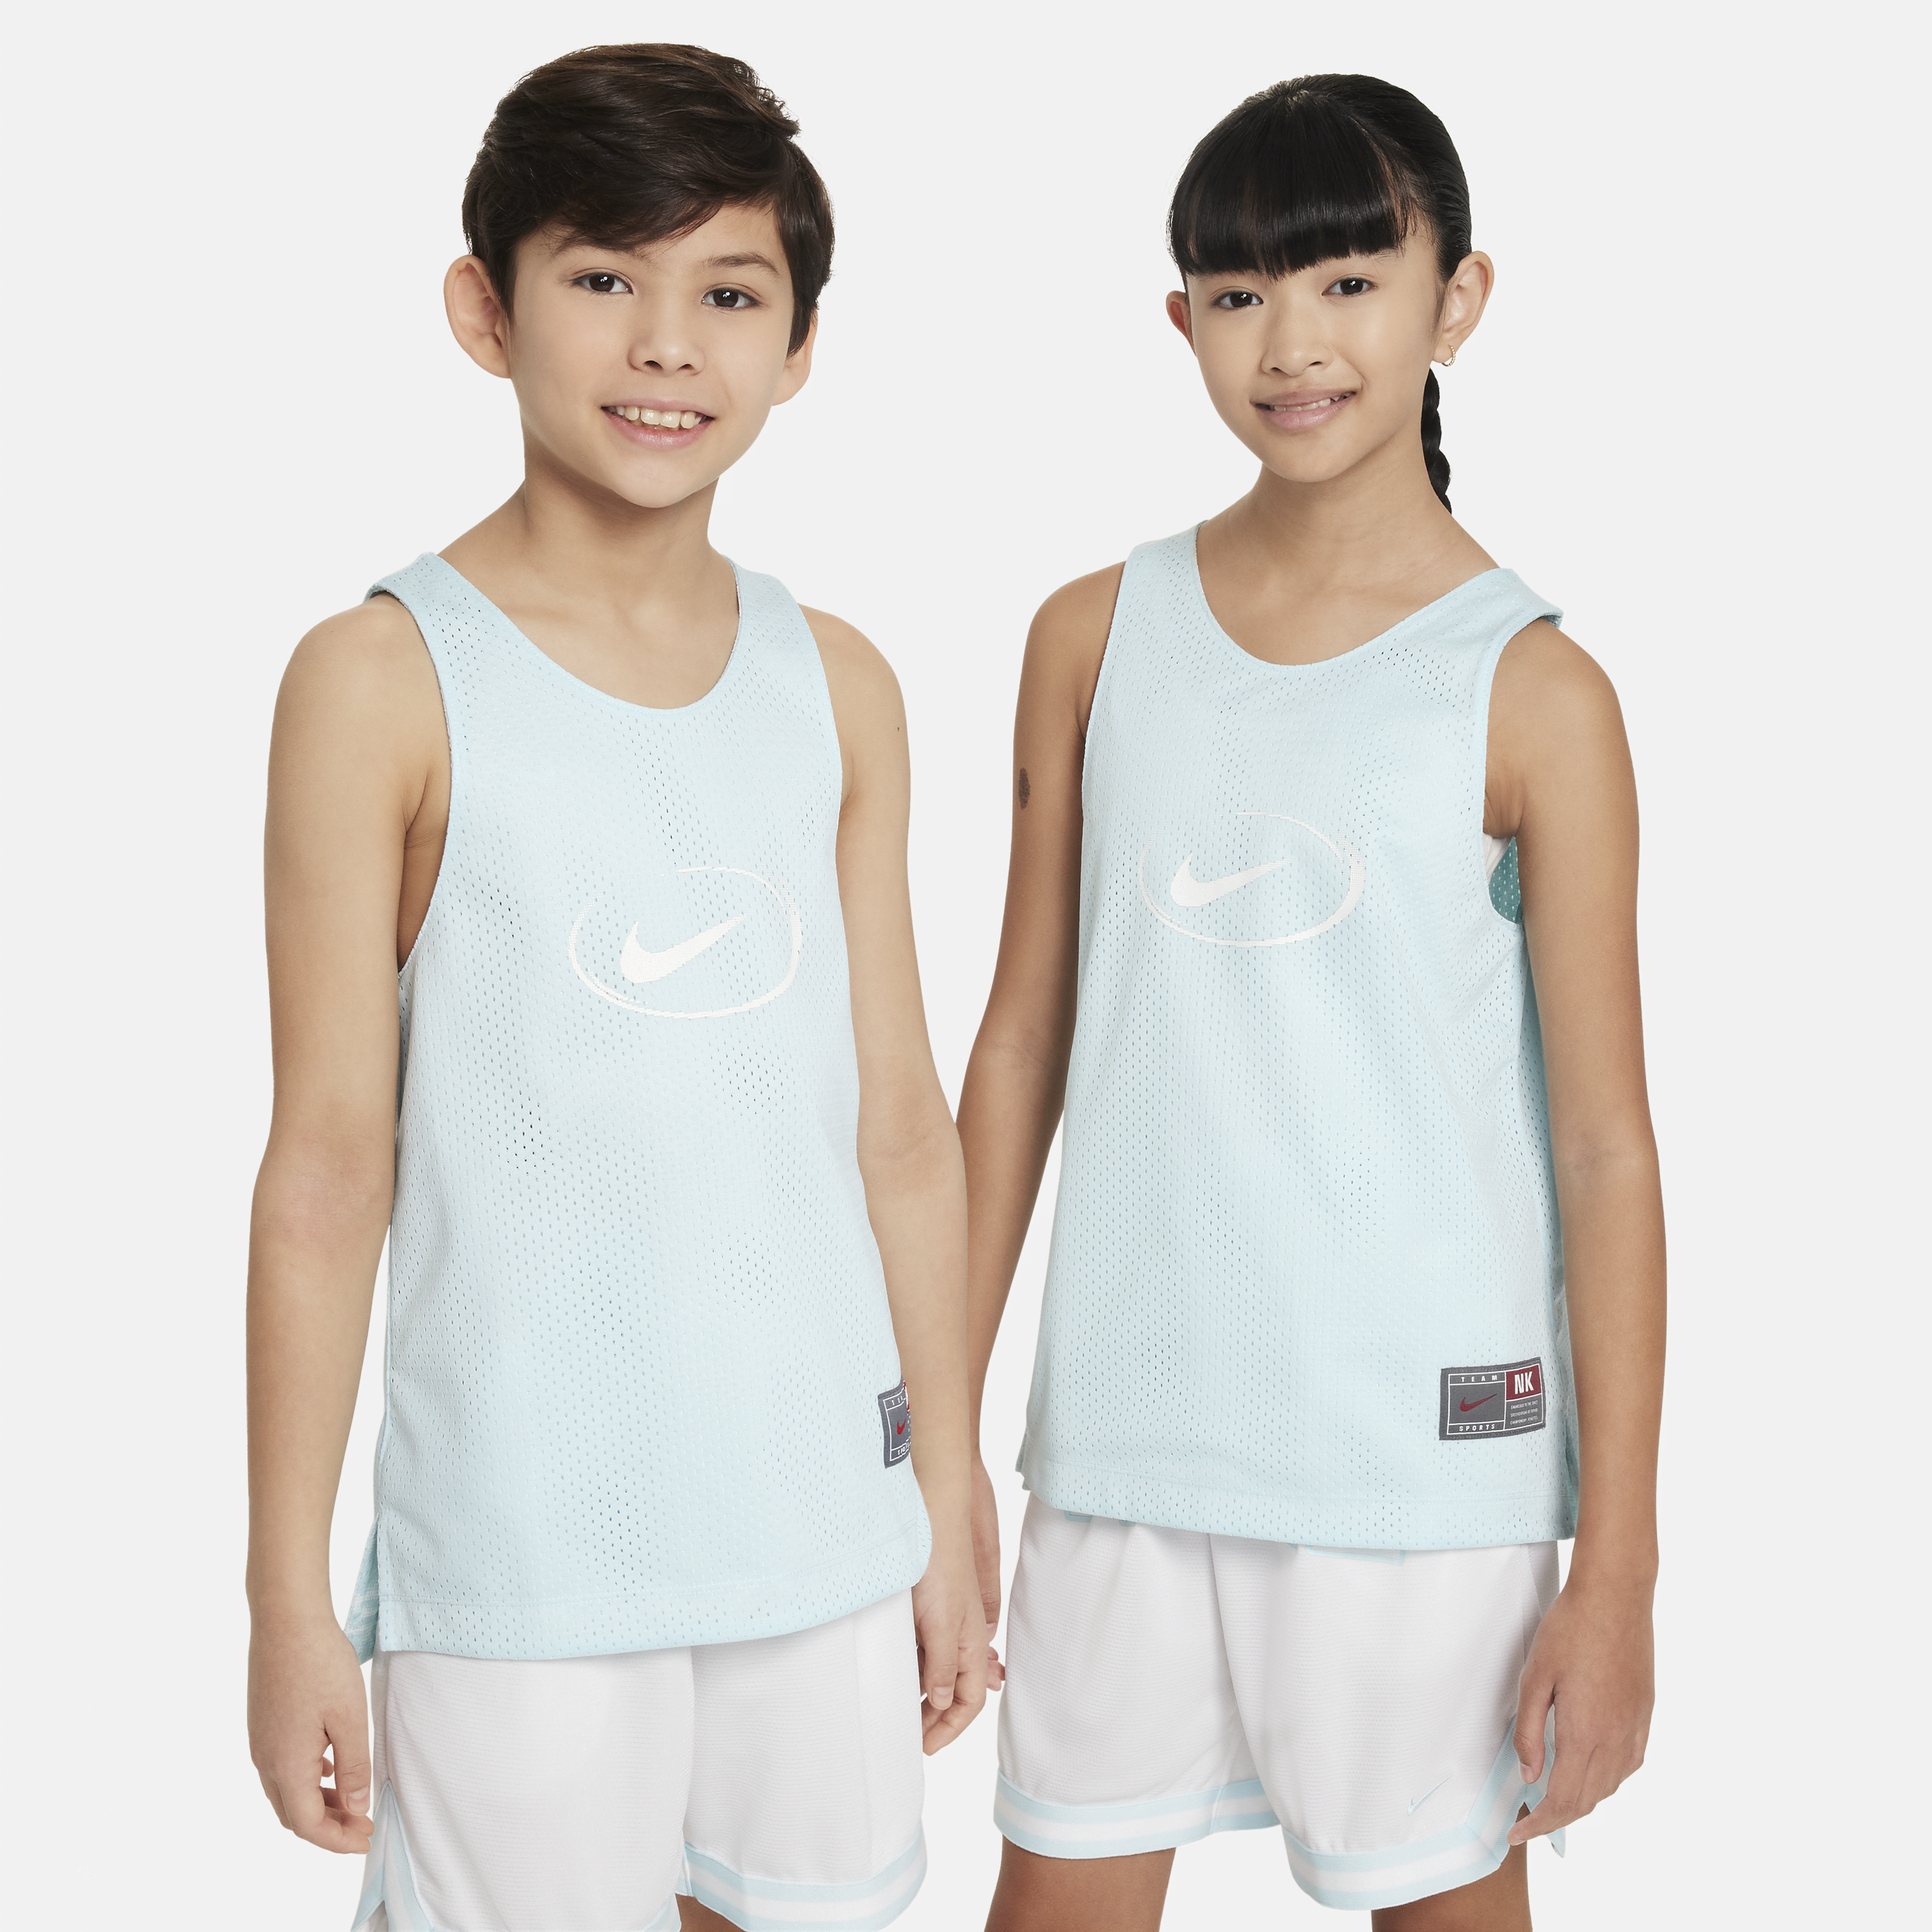 Nike Culture of Basketball omkeerbare jersey voor kids - Blauw